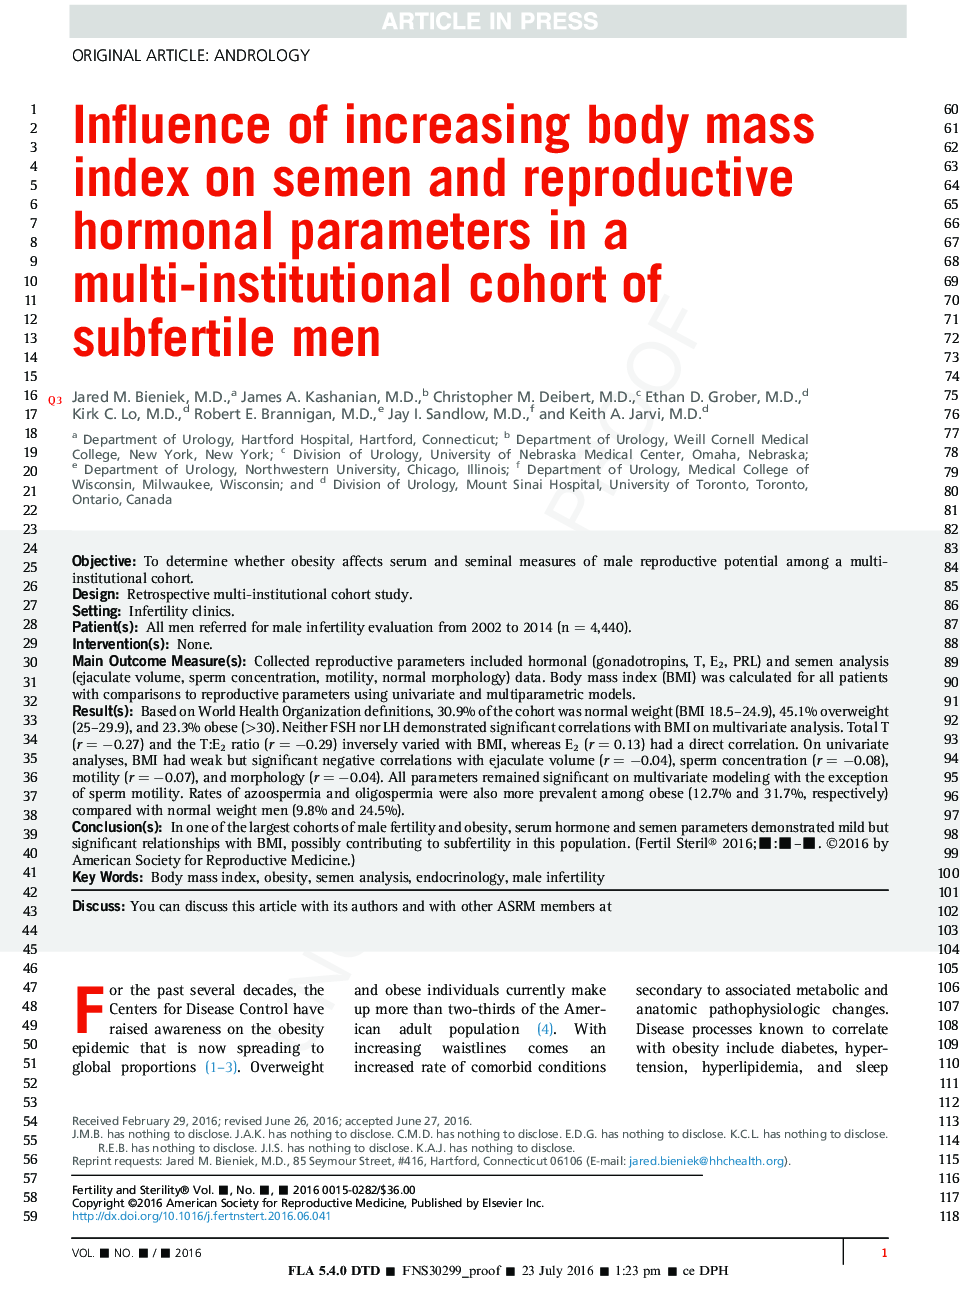 تأثیر افزایش شاخص توده بدنی بر پارامترهای هورمونی اسپرم و تولید مثل در یک گروه چند نفره مردان نابارور 